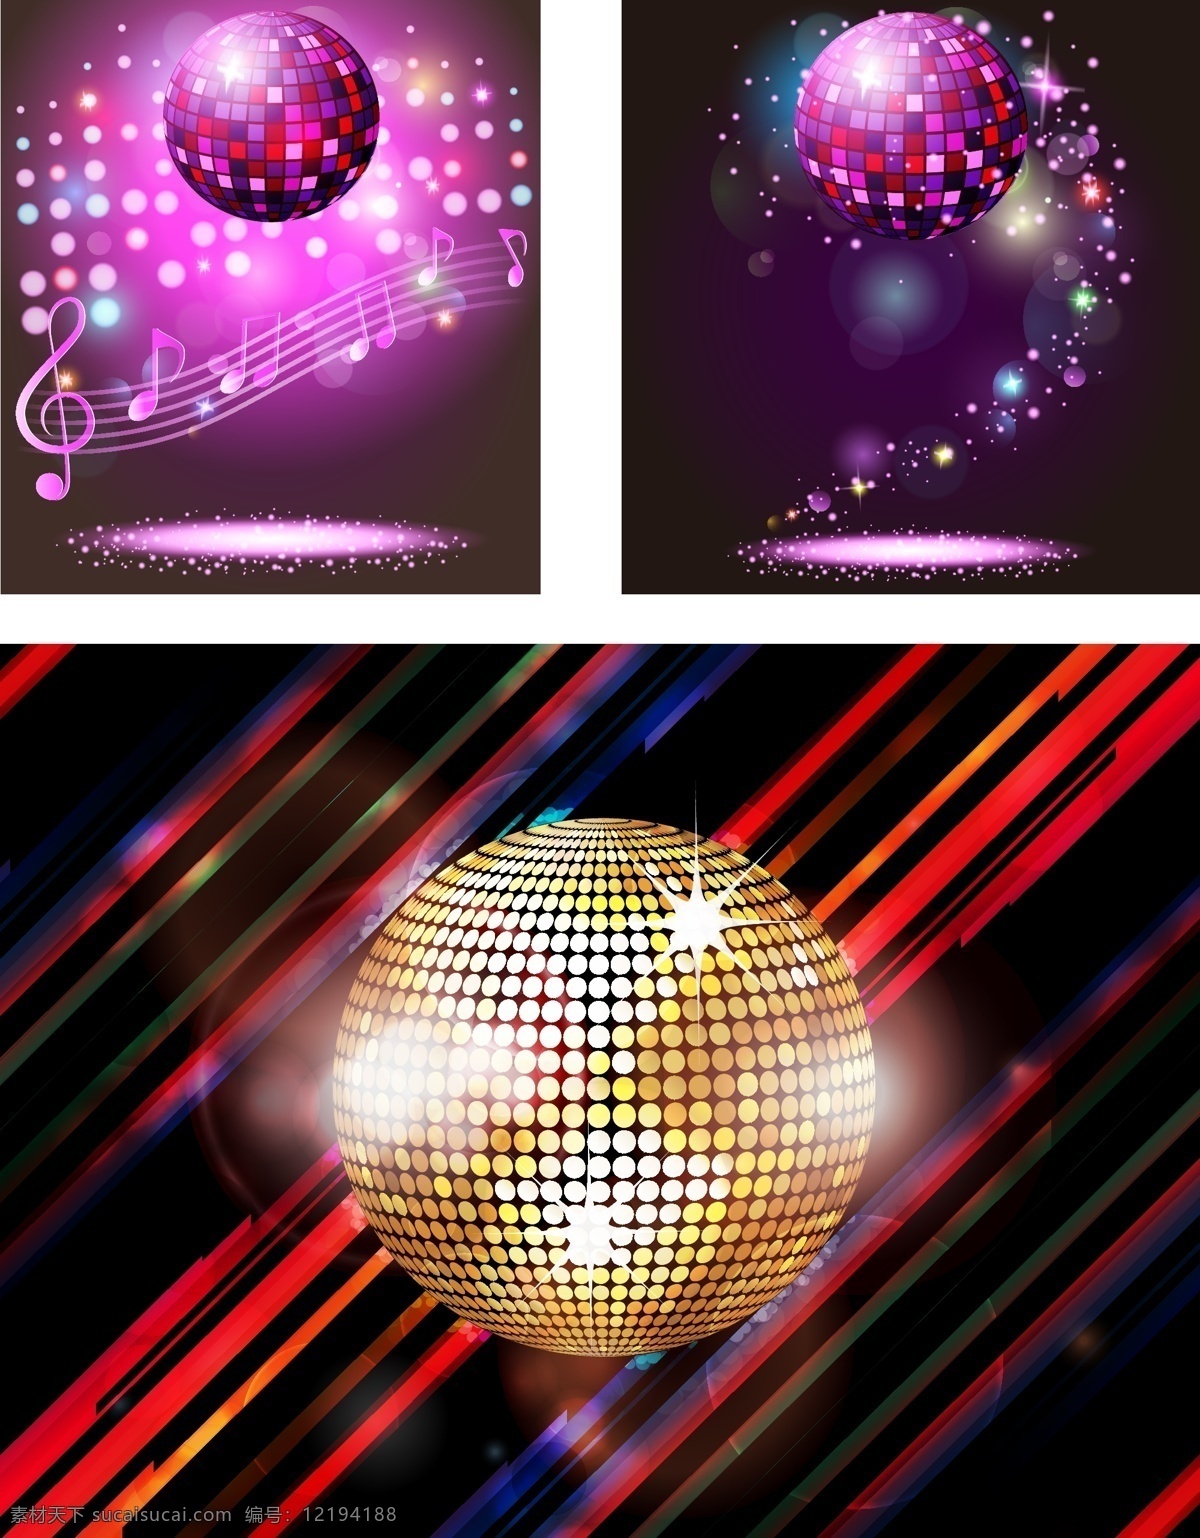 音乐素材 音符 音乐 舞厅 ktv素材 灯光 disco 迪斯科 灯效 矢量素材